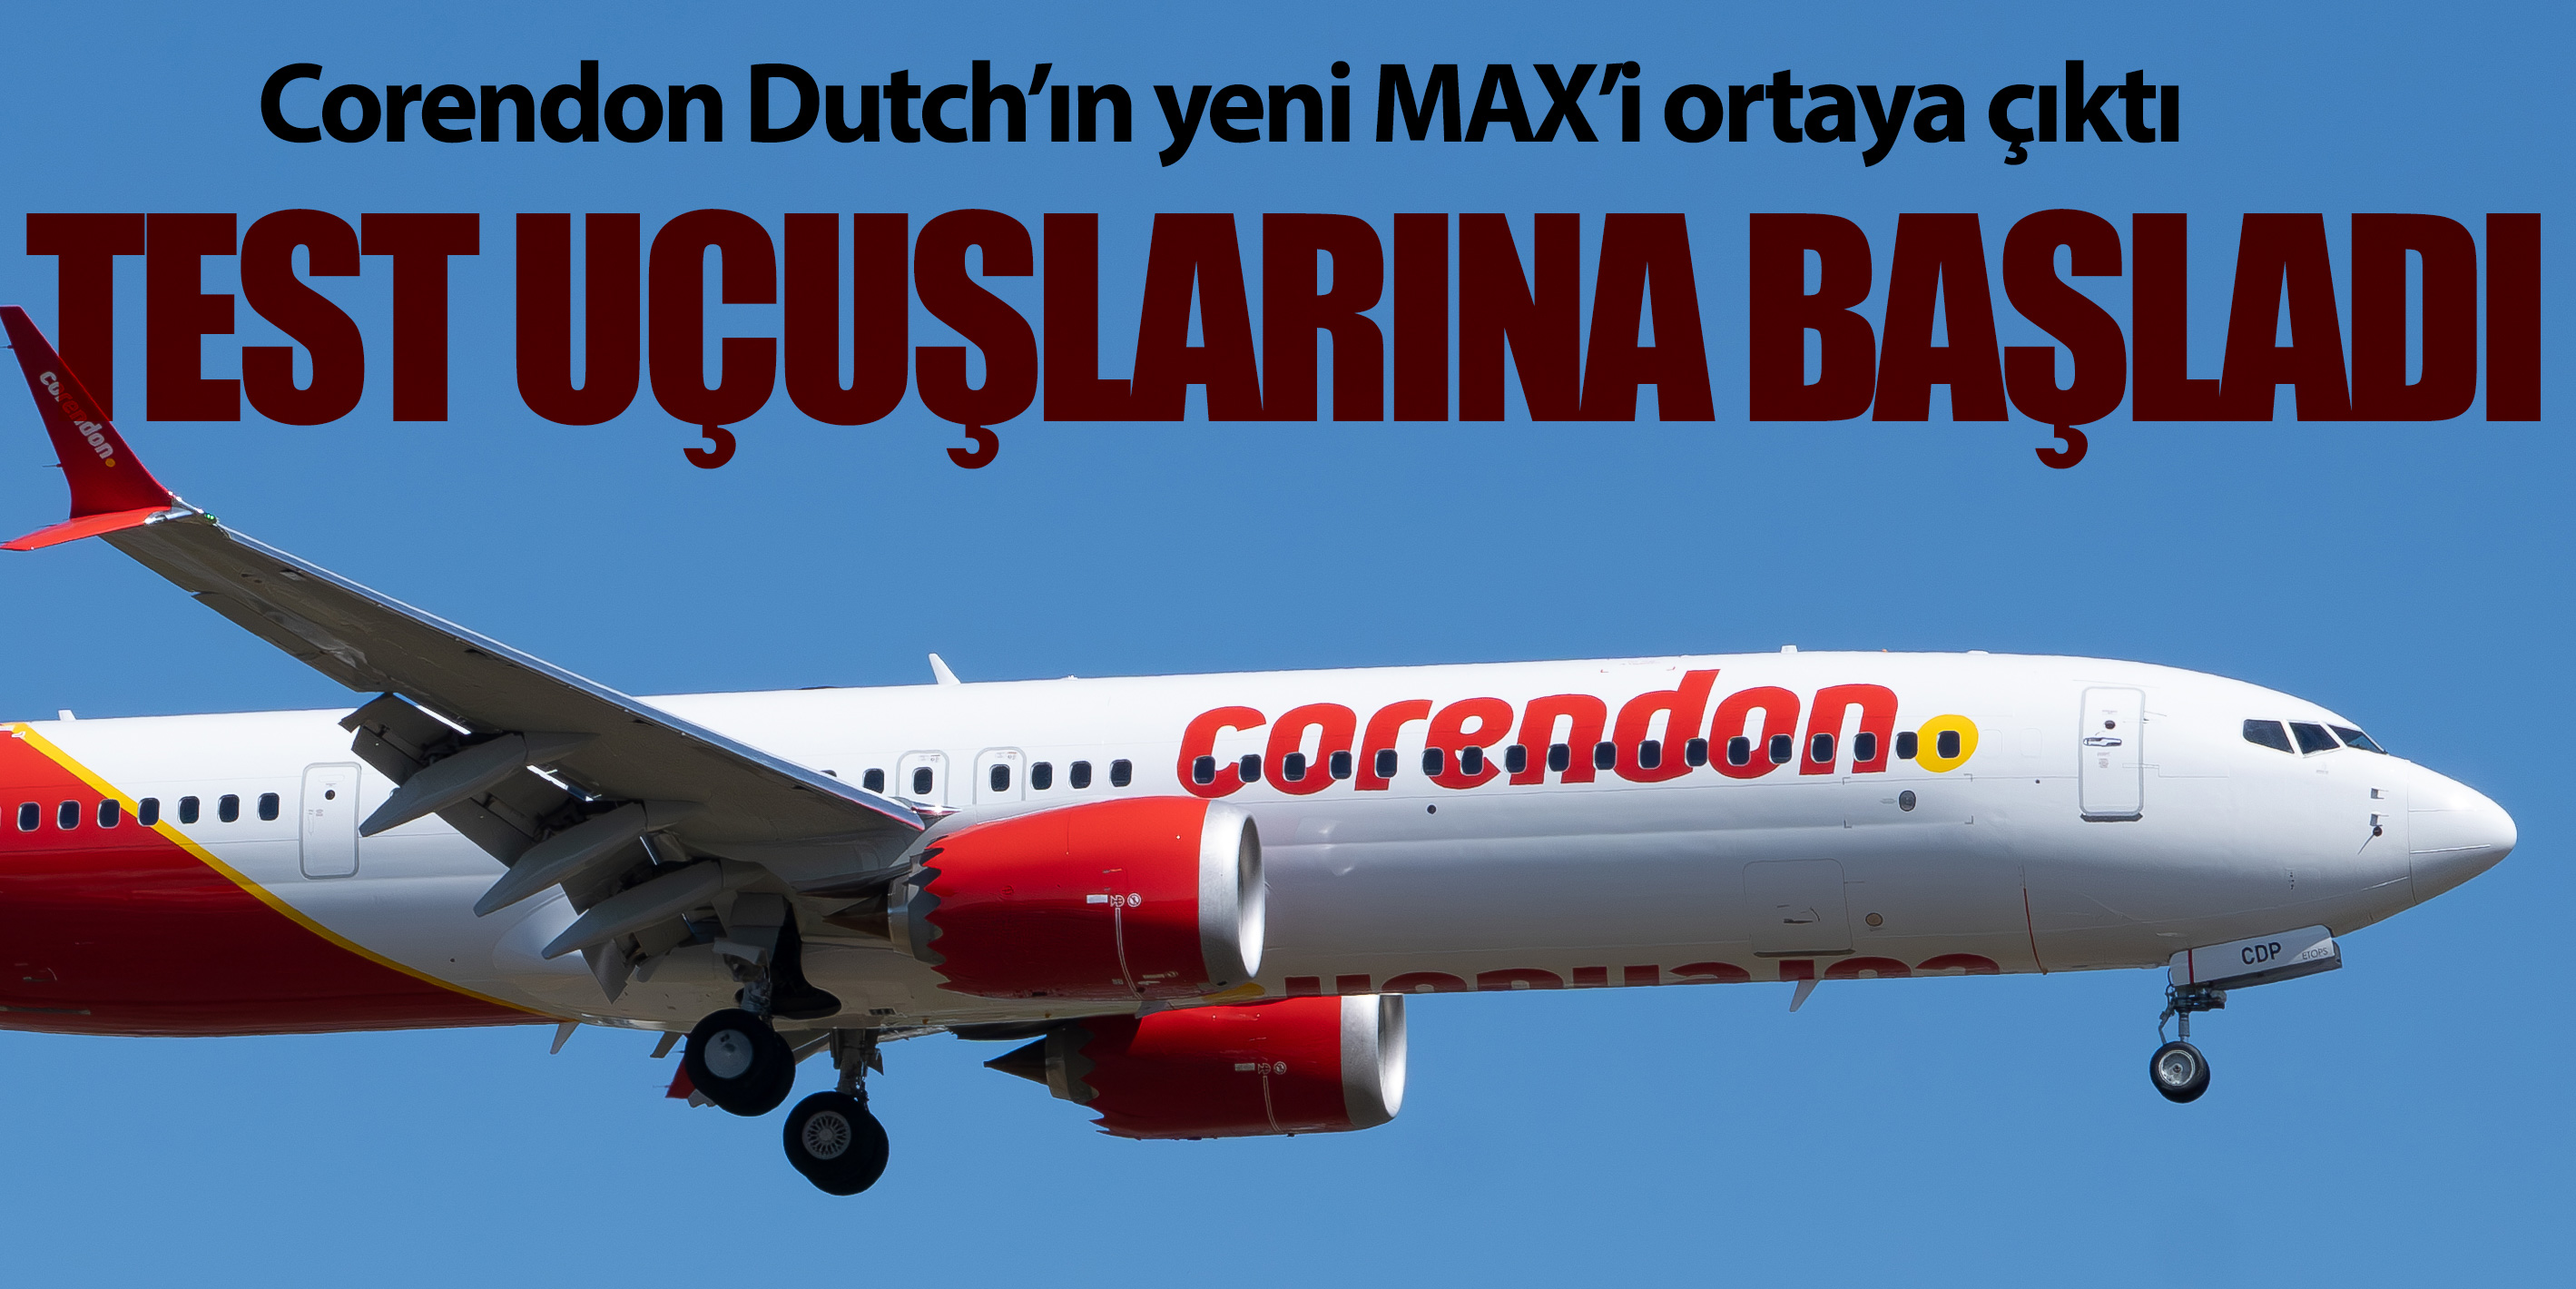 Corendon Dutch yeni uçağını filoya dahil ediyor